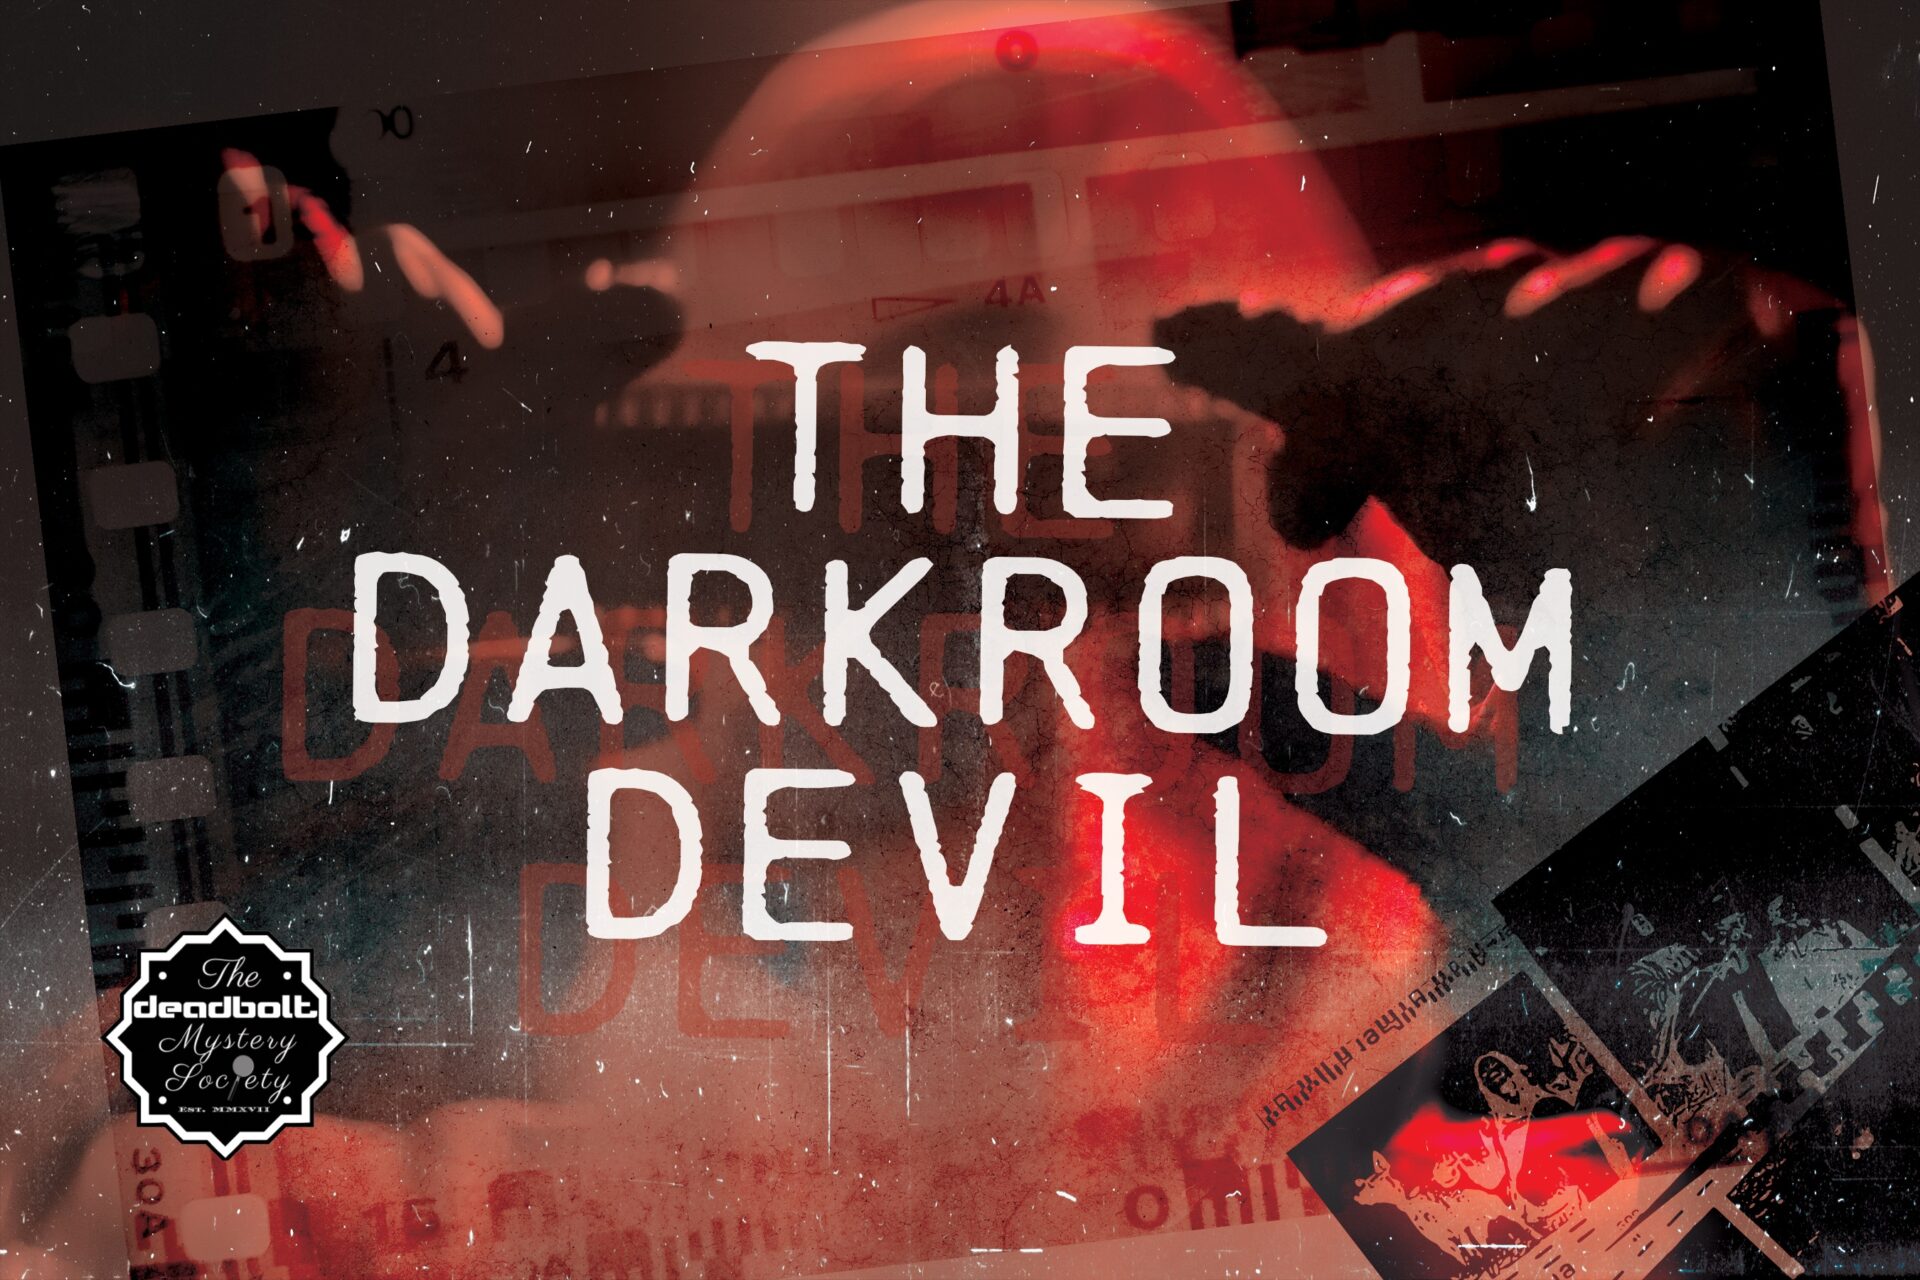 The Darkroom Devil